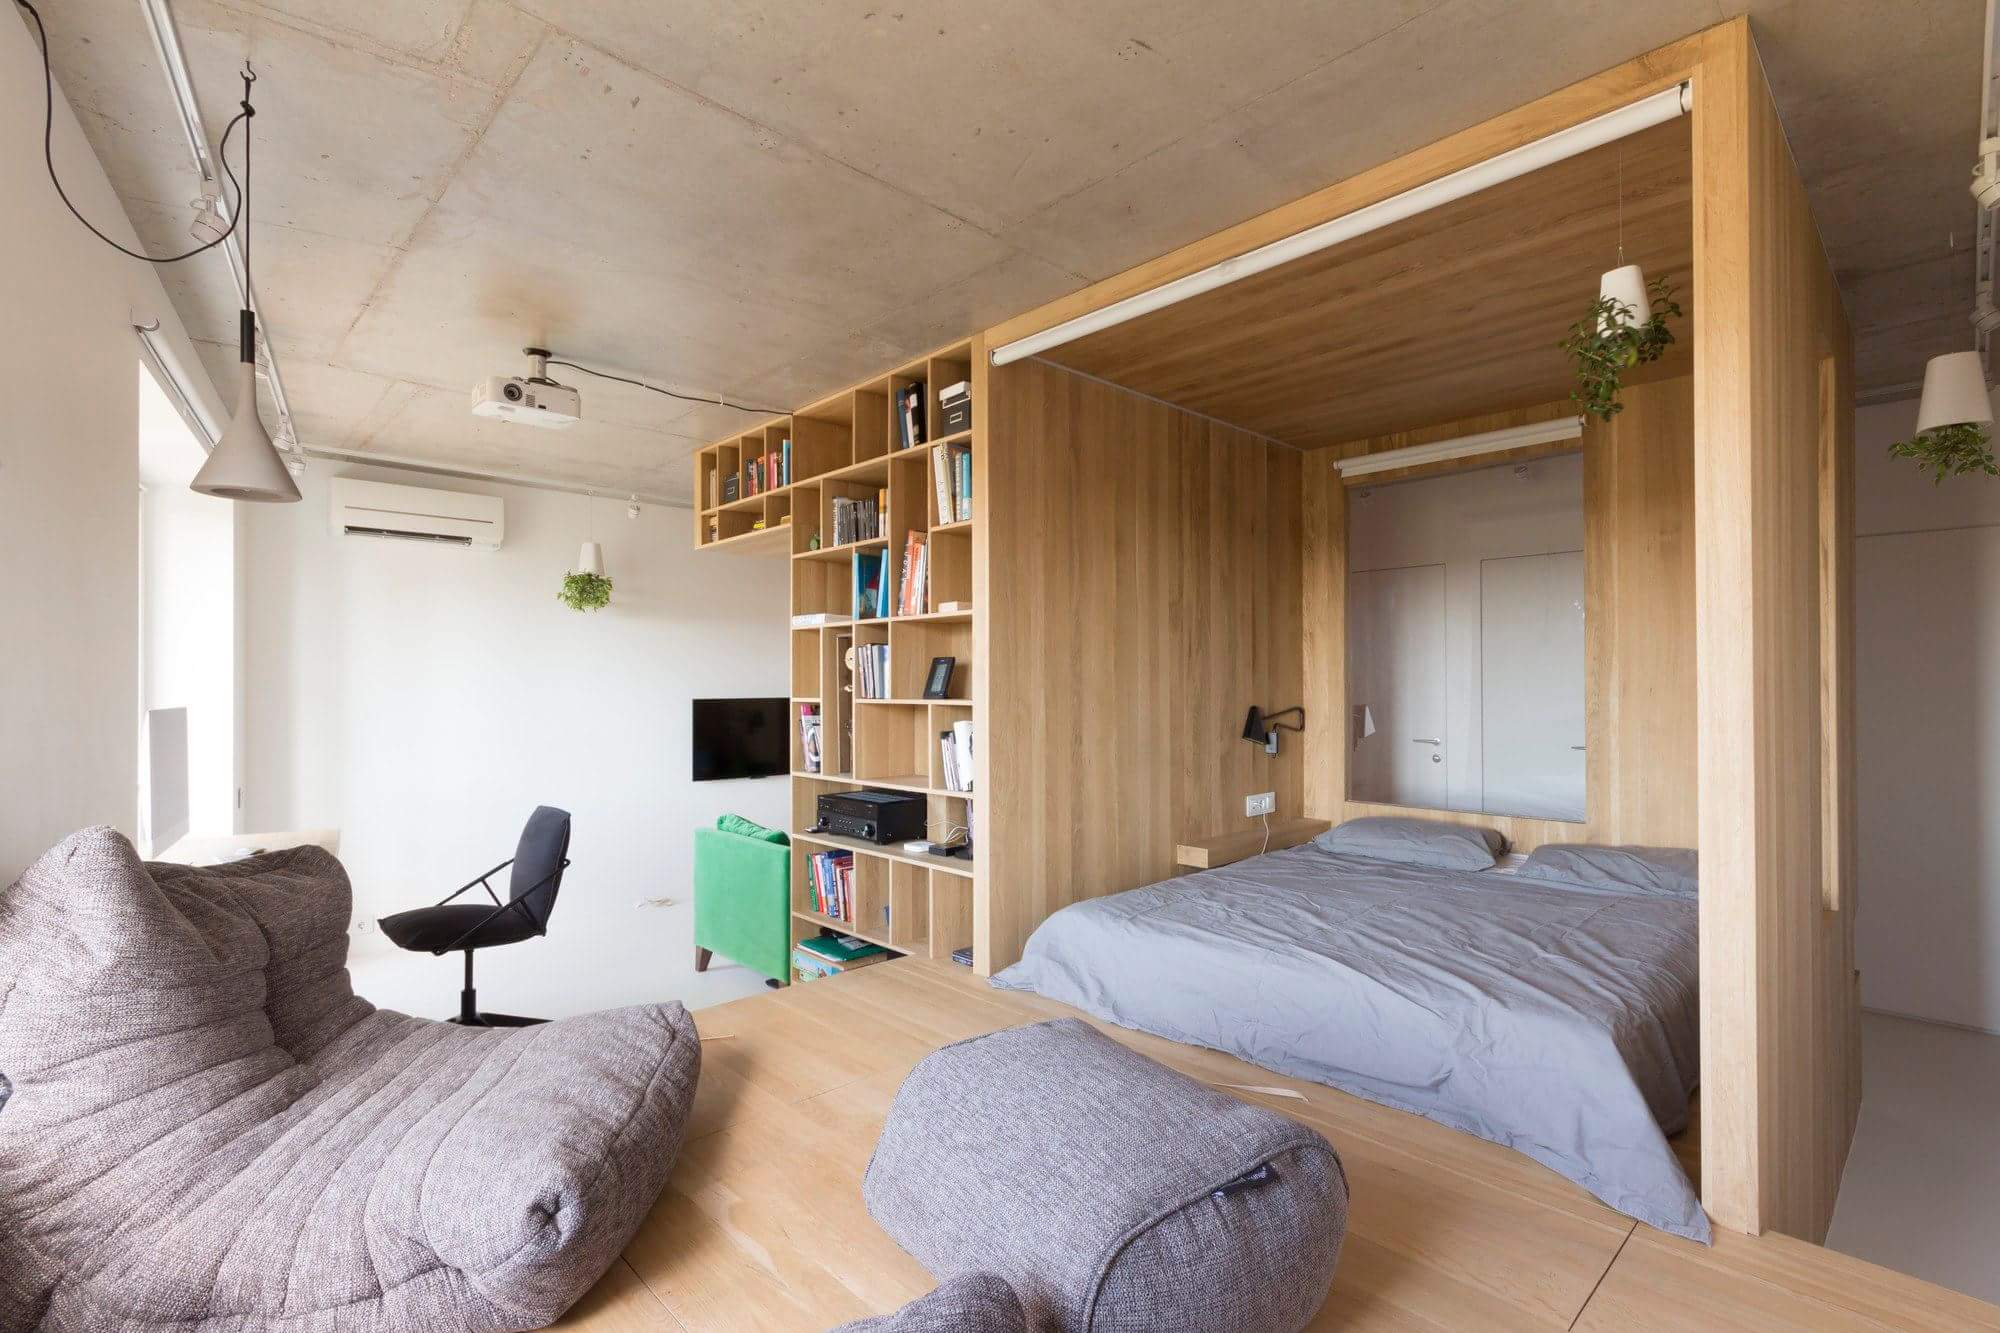 TIPS como el apartamento tipo puede convertirse en algún diseño funcional y acogedor.